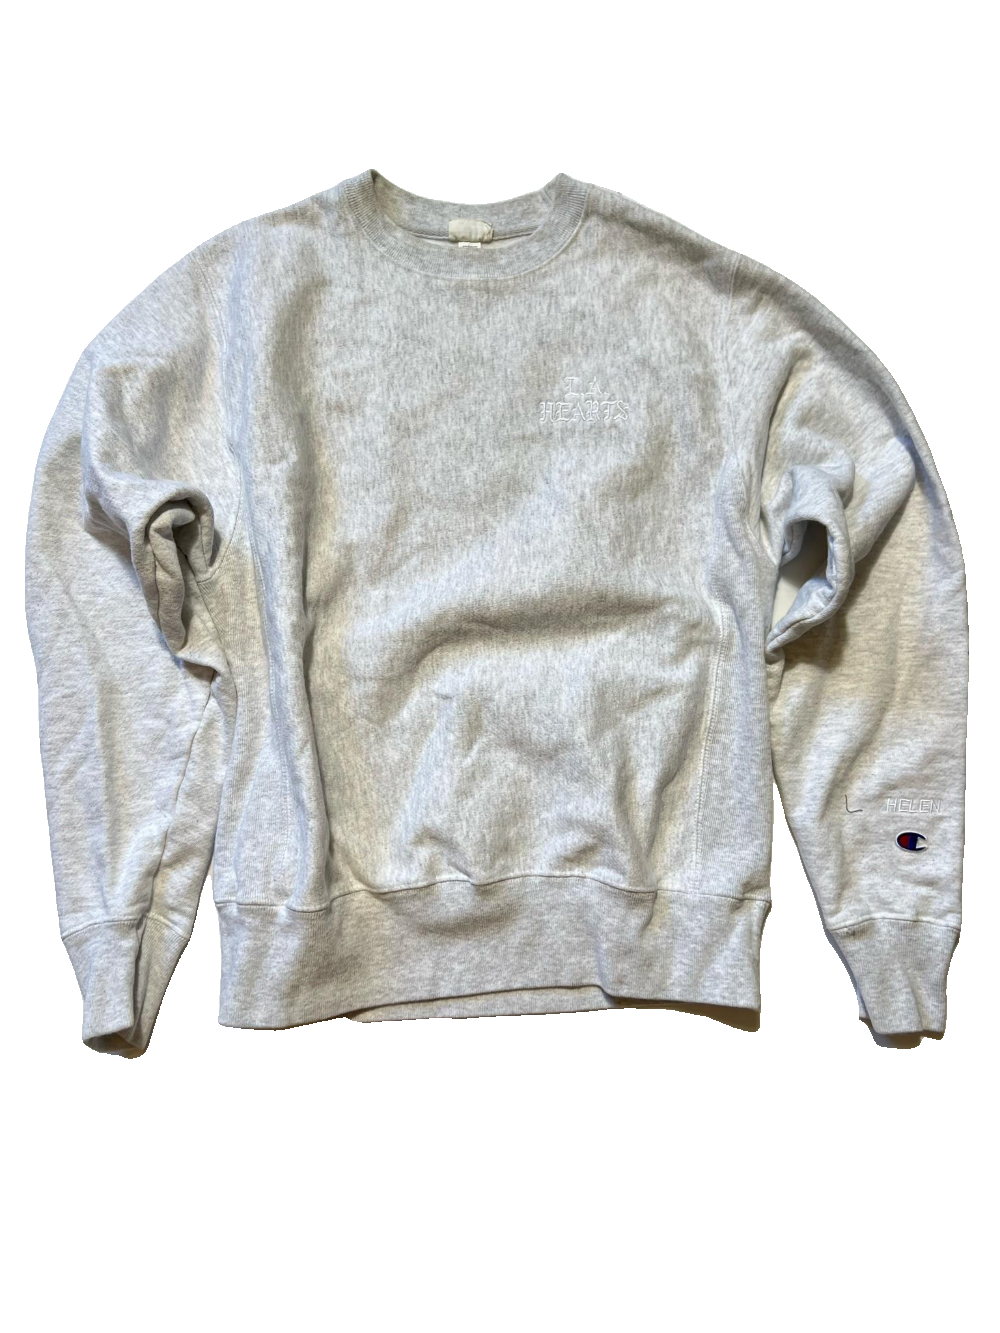 Champion - Gray LA Hearts Sweater